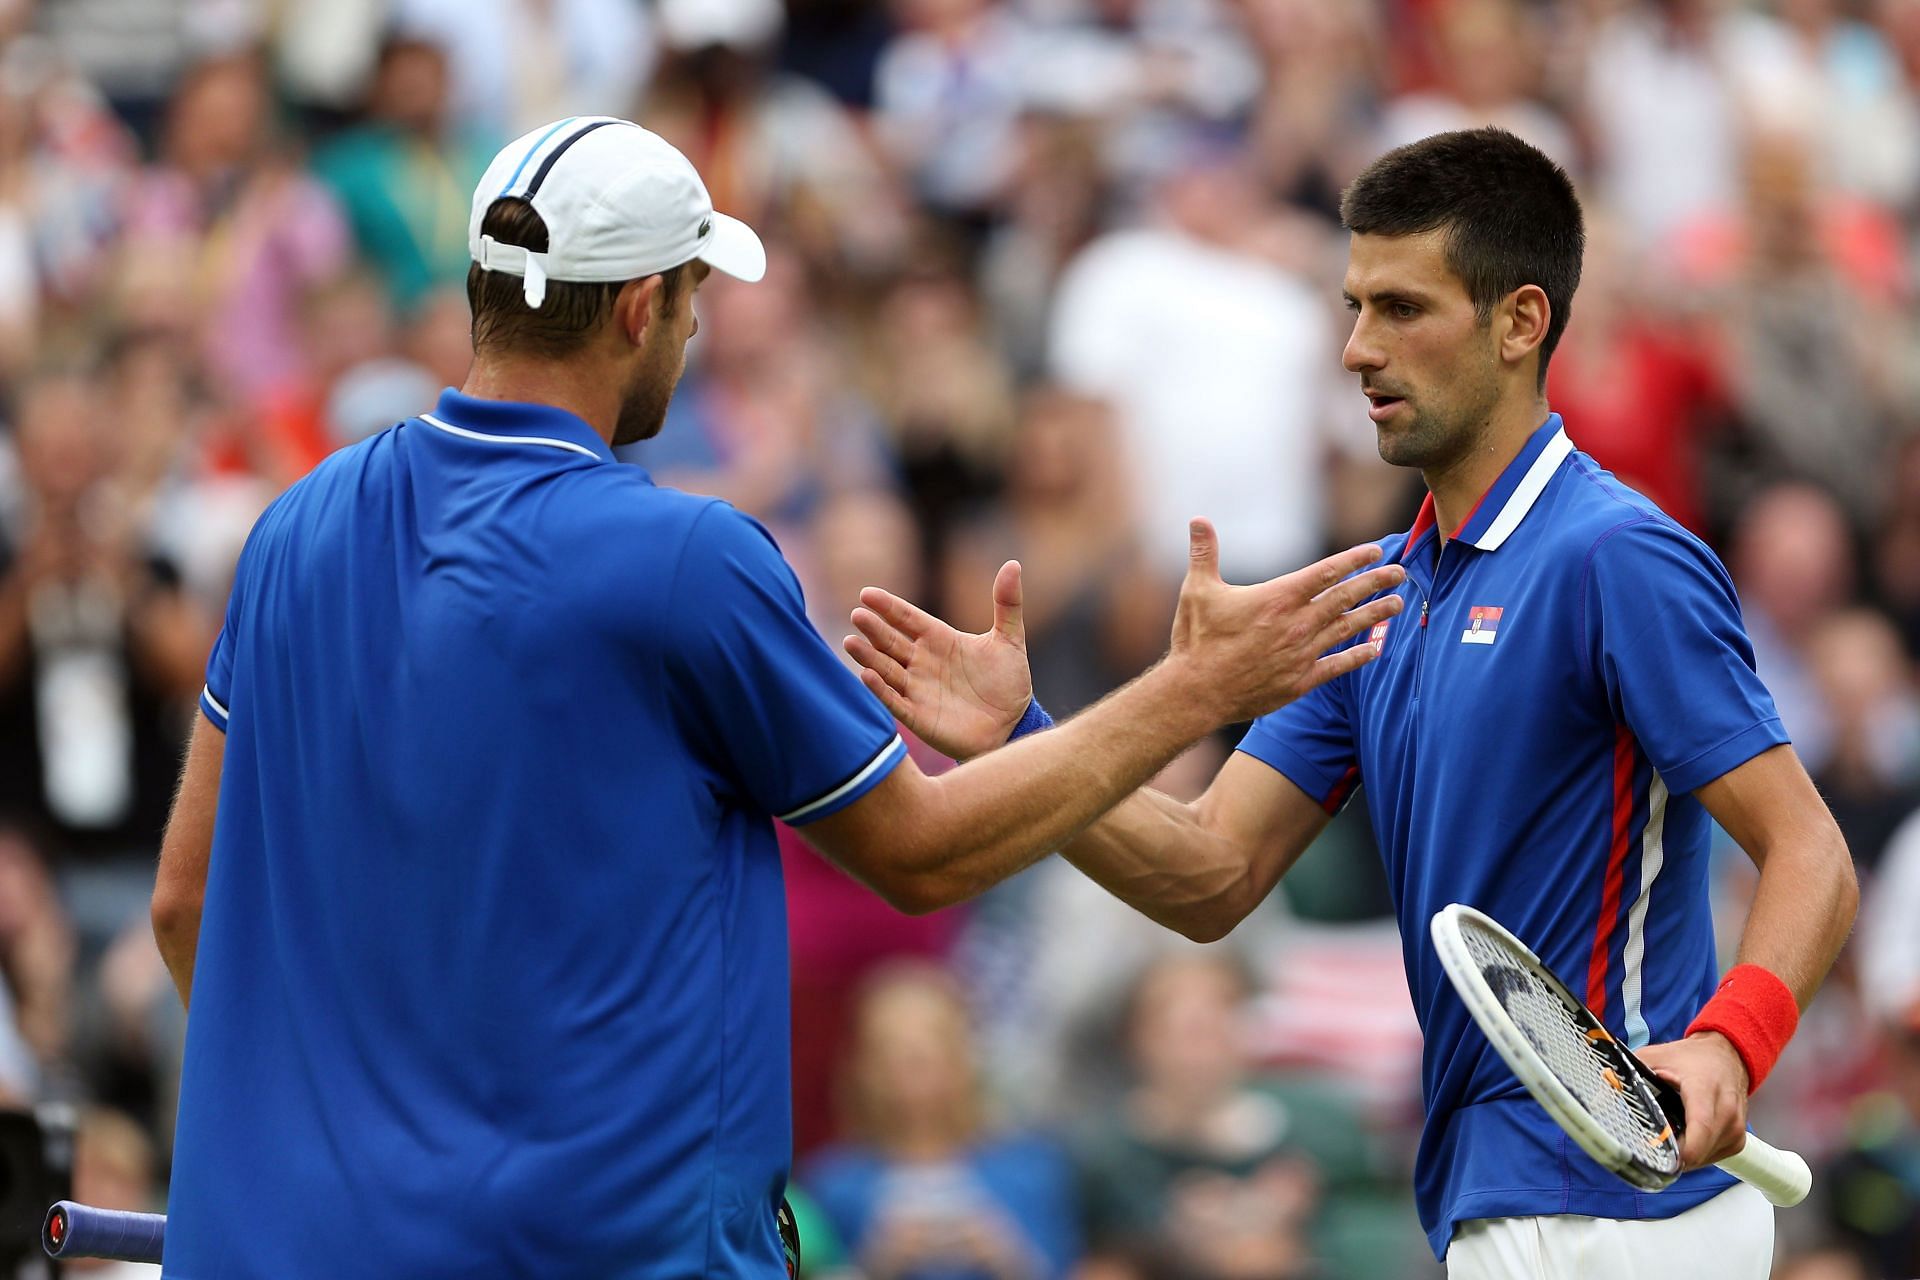 And Roddick and Novak Djokovic